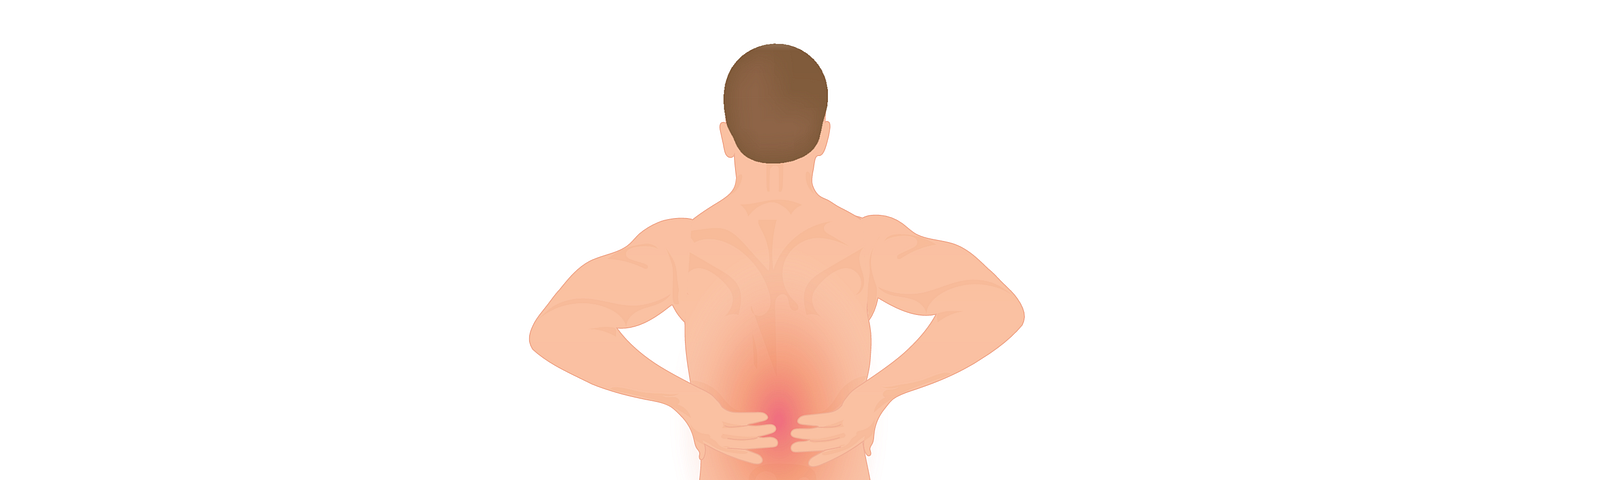 14 Exercises for Upper Back Pain - Injurymap